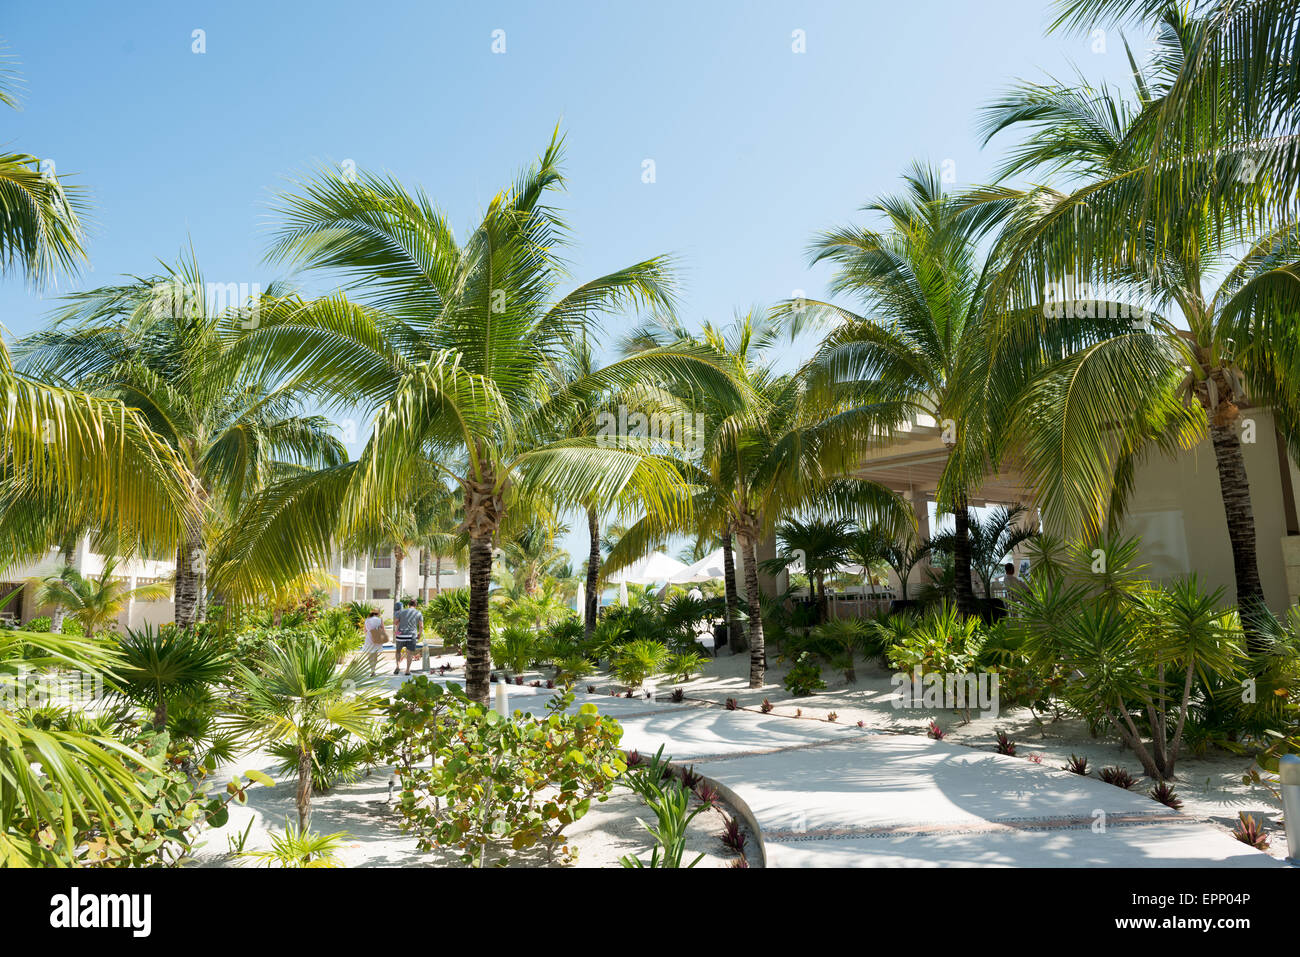 Beloved Hotel, Playa Mujeres, Mexiko, befindet sich nördlich von Cancun. Es ist ein Luxus-all-inclusive Beach Resort Besitz der Excellence-Gruppe. Stockfoto